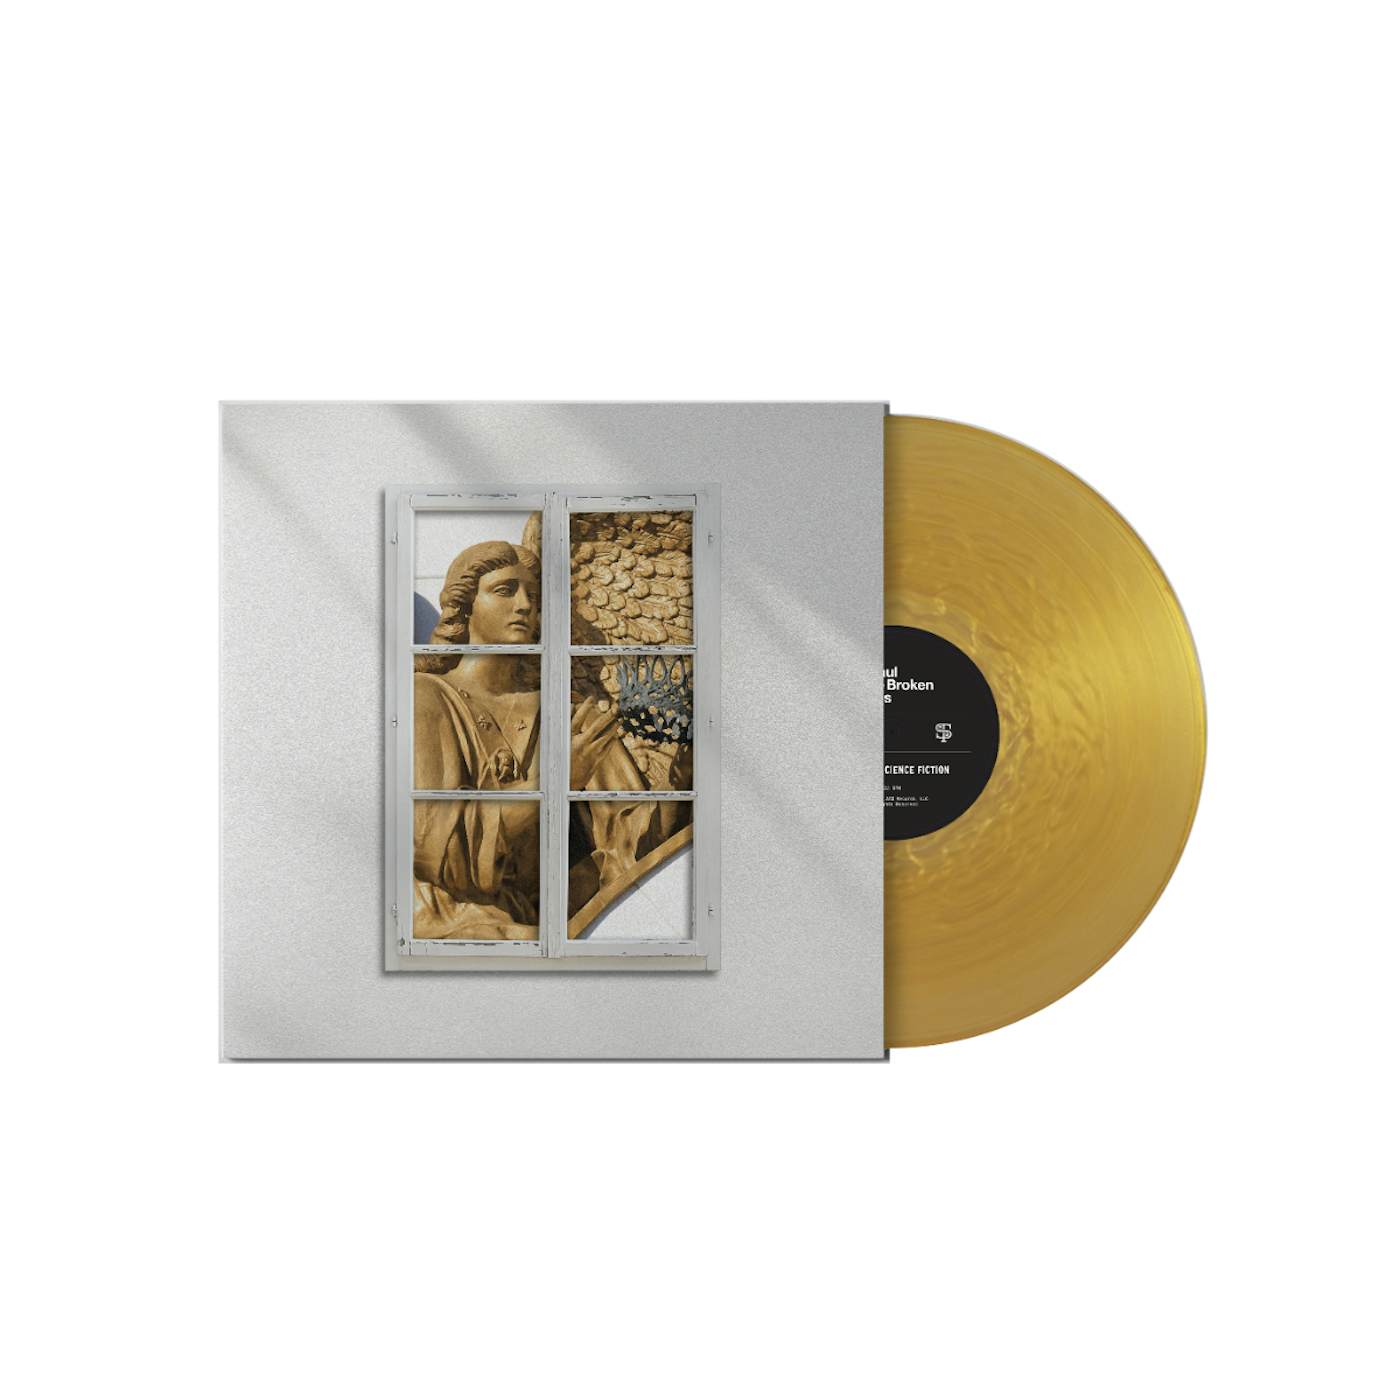 St. Paul & The Broken Bones – ‘Angels In Science Fiction’ - LP – Deluxe Edition – Gold Vinyl